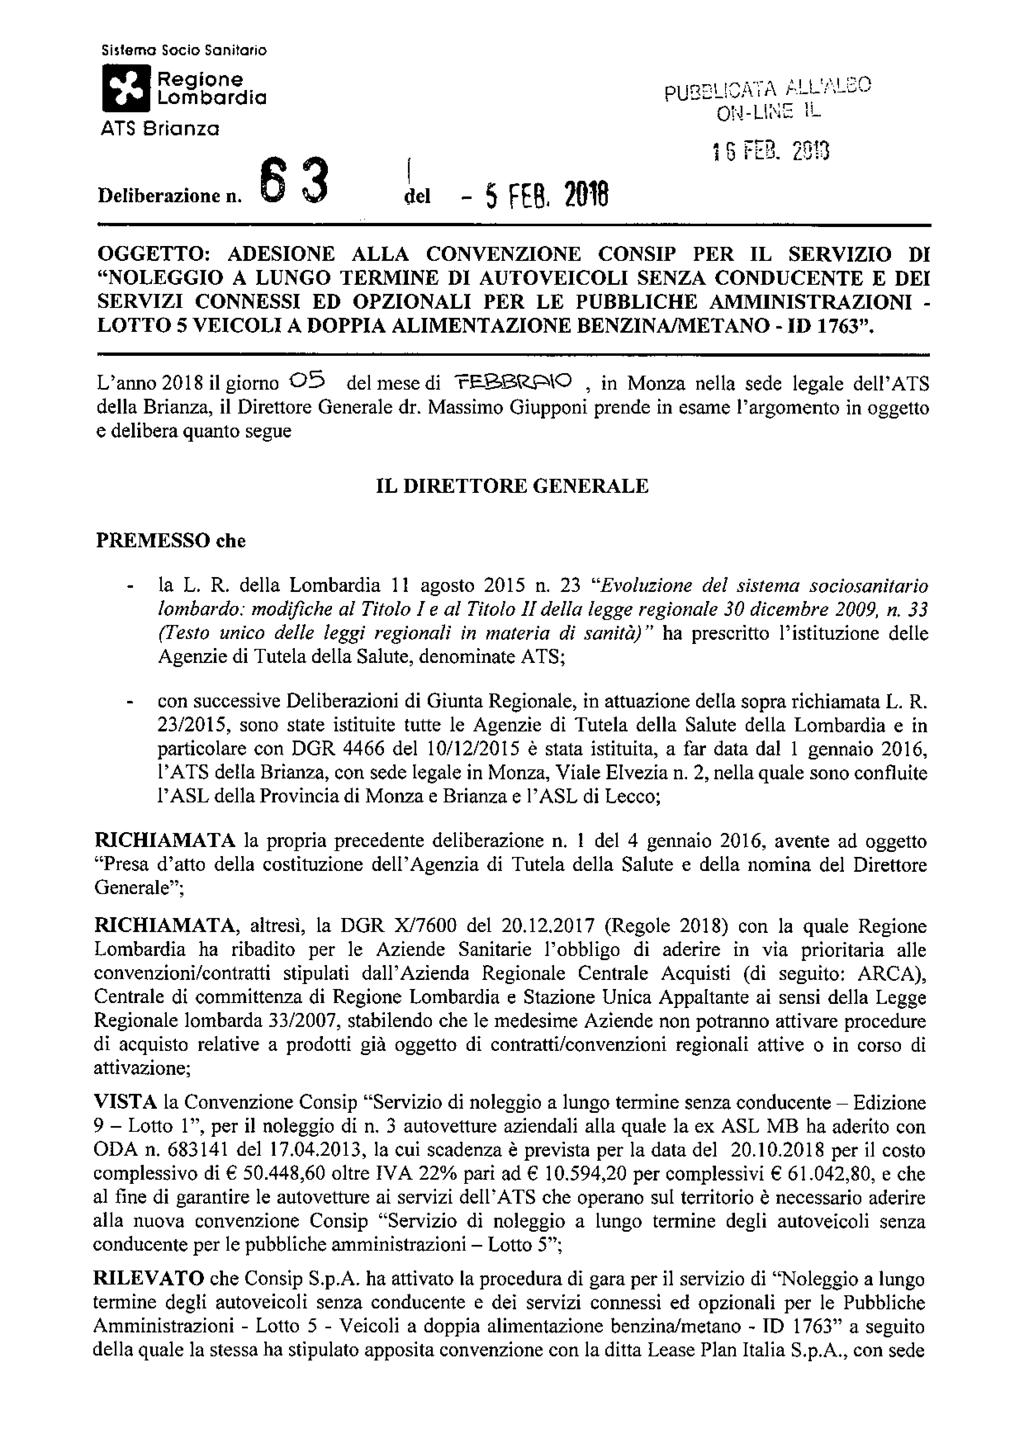 Sisioma Socio Sanitario \*M Regione j^j Lombardia ATS Brianza Deliberazione n. 3 dei - 5 FE6.